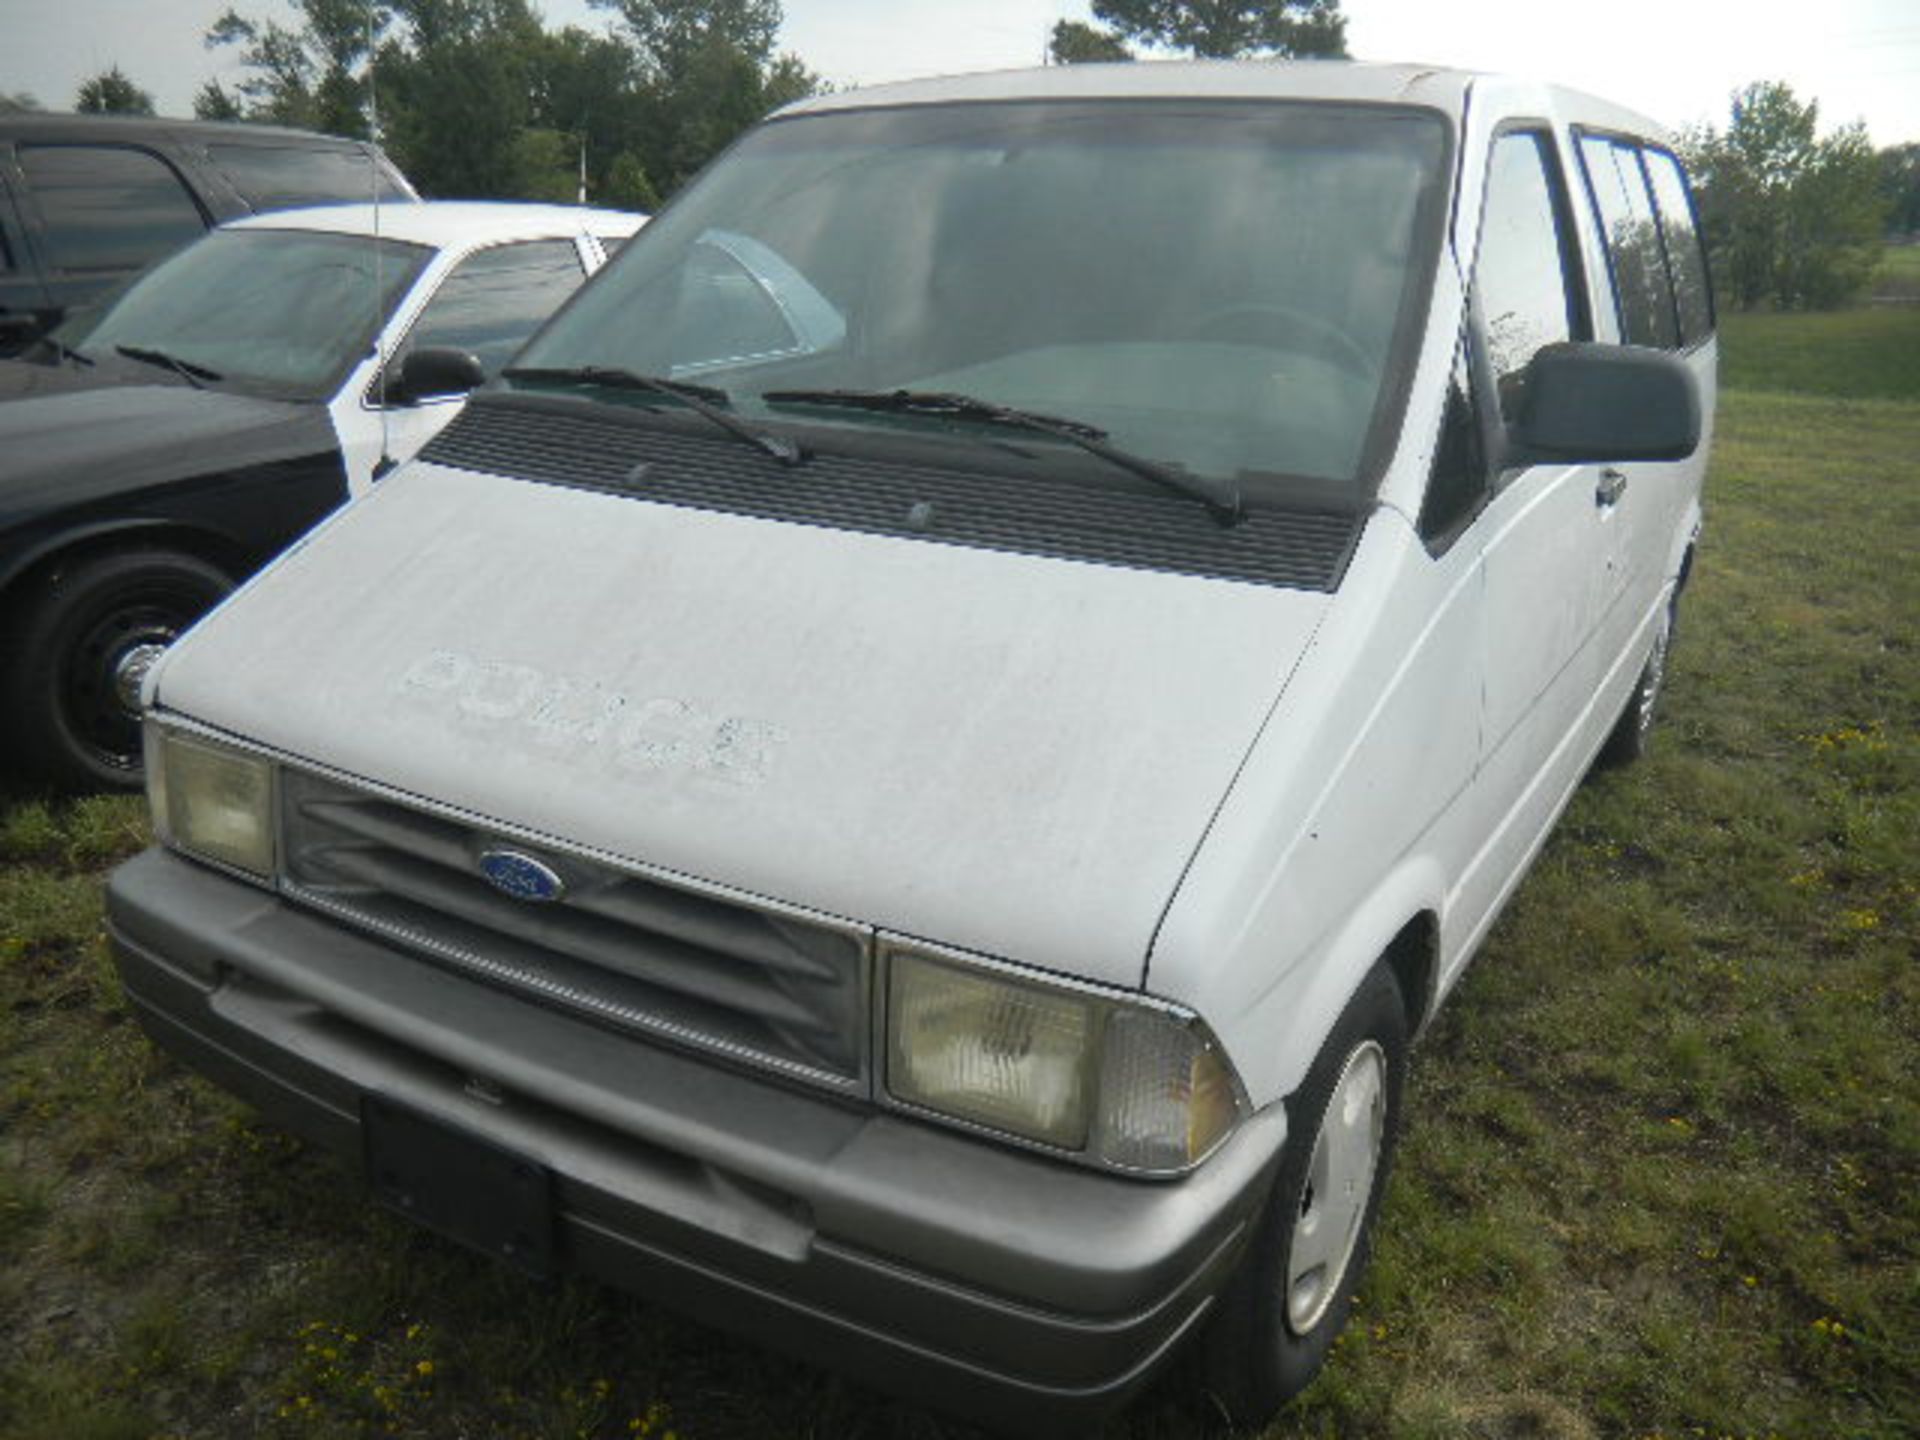 1997 Ford Aerostar Van (White) - Asset I.D. #830 - Last of Vin (ZB32322) - Image 2 of 7